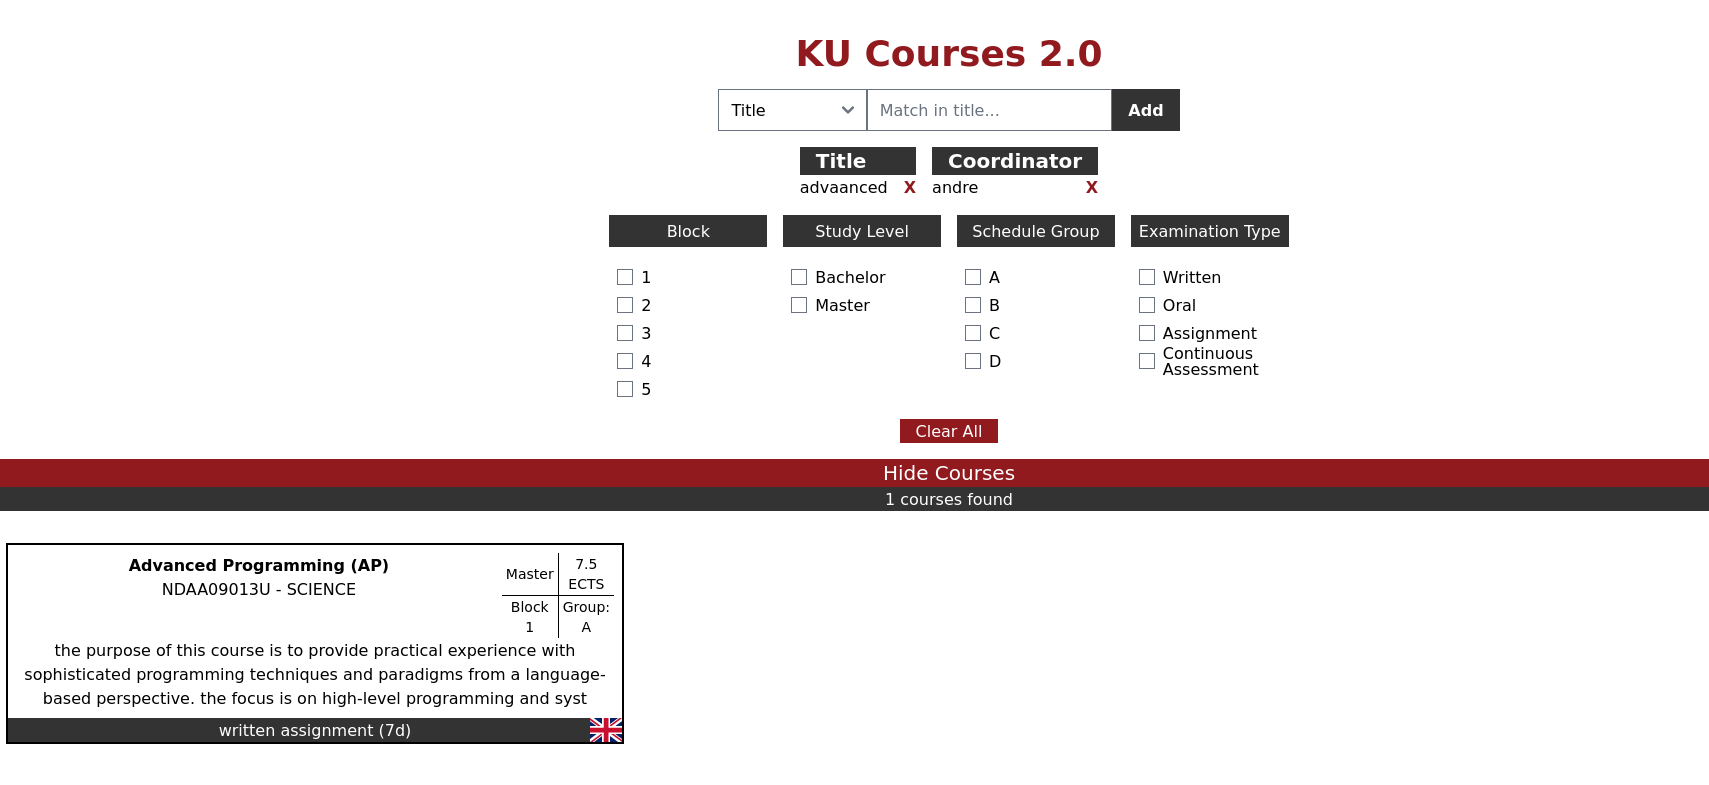 KU courses